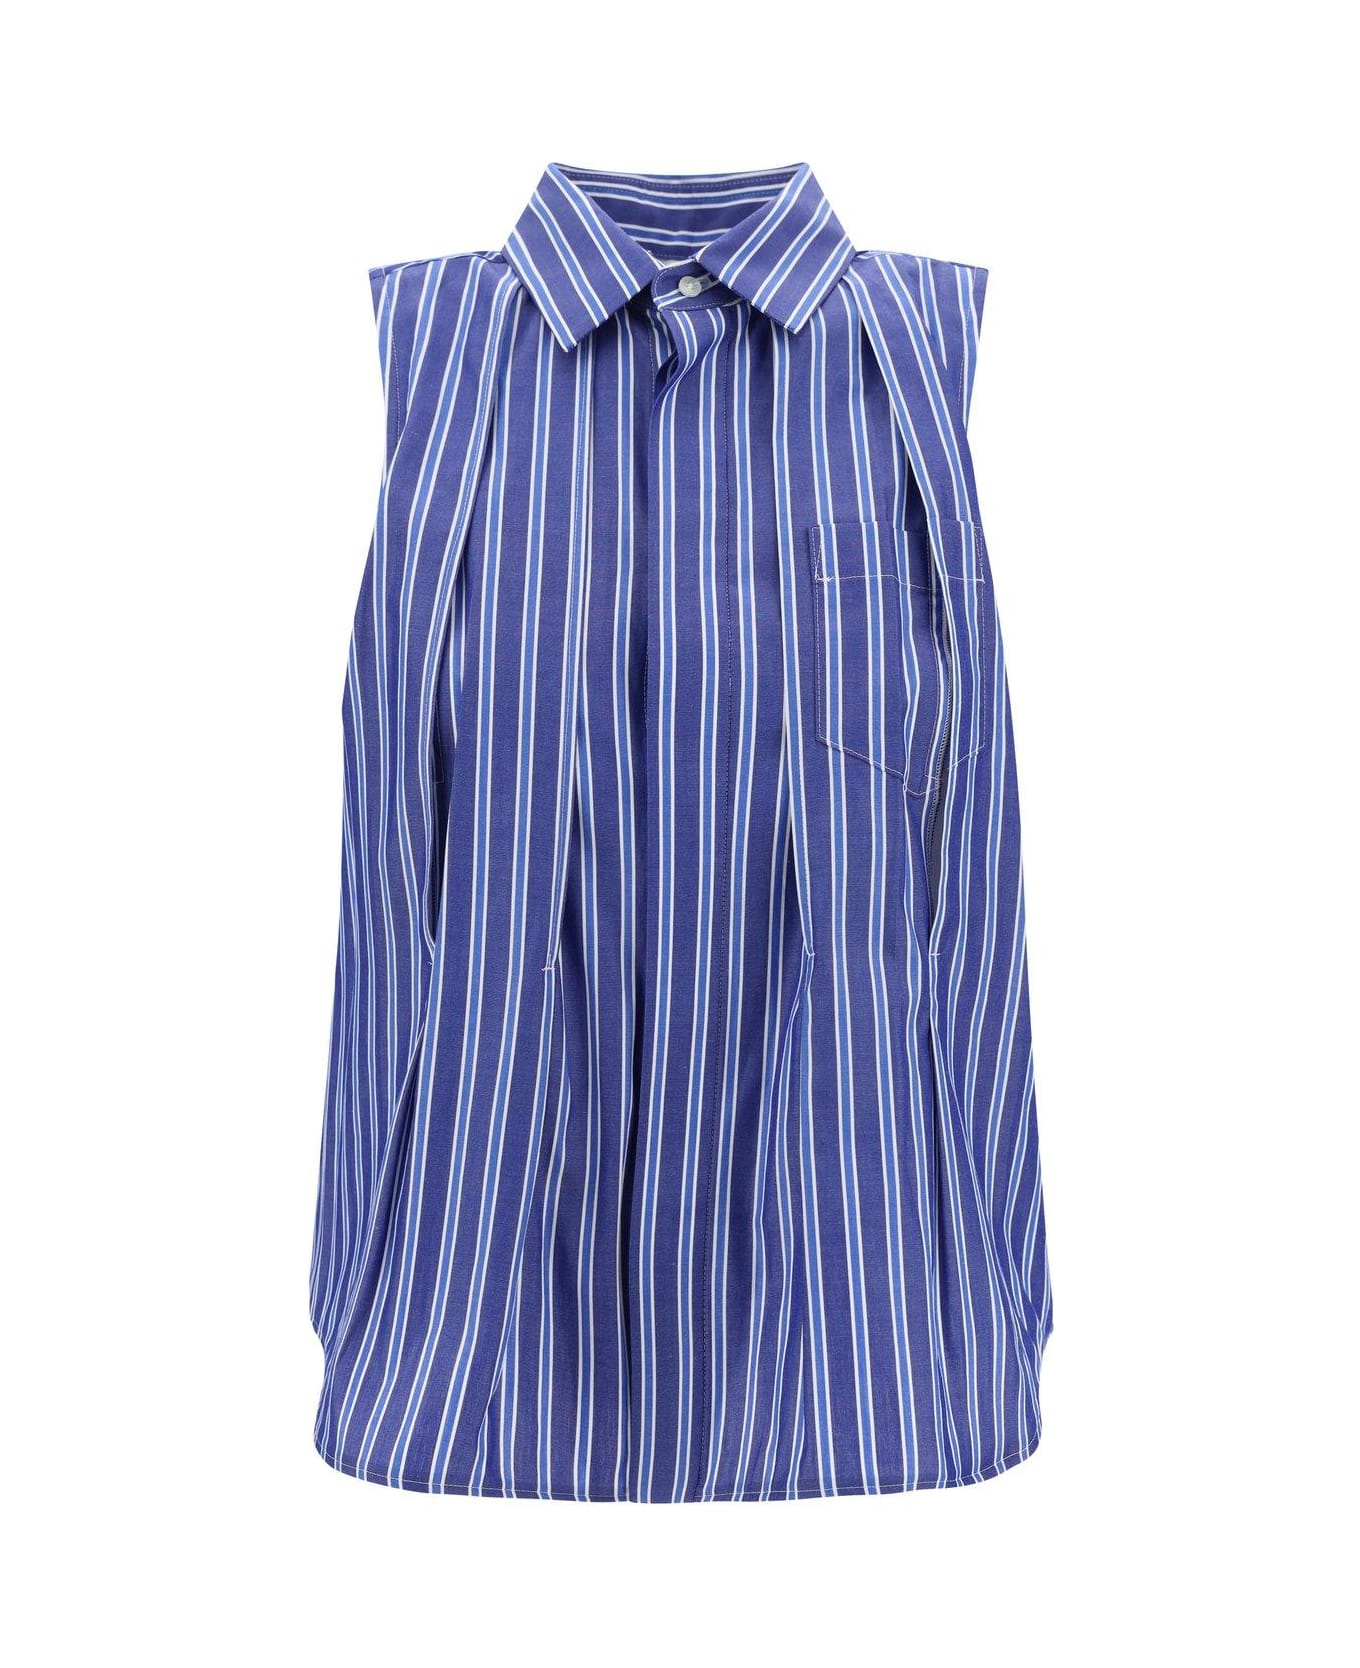 Sacai Striped Flared Hem Sleeveless Shirt - Blue シャツ